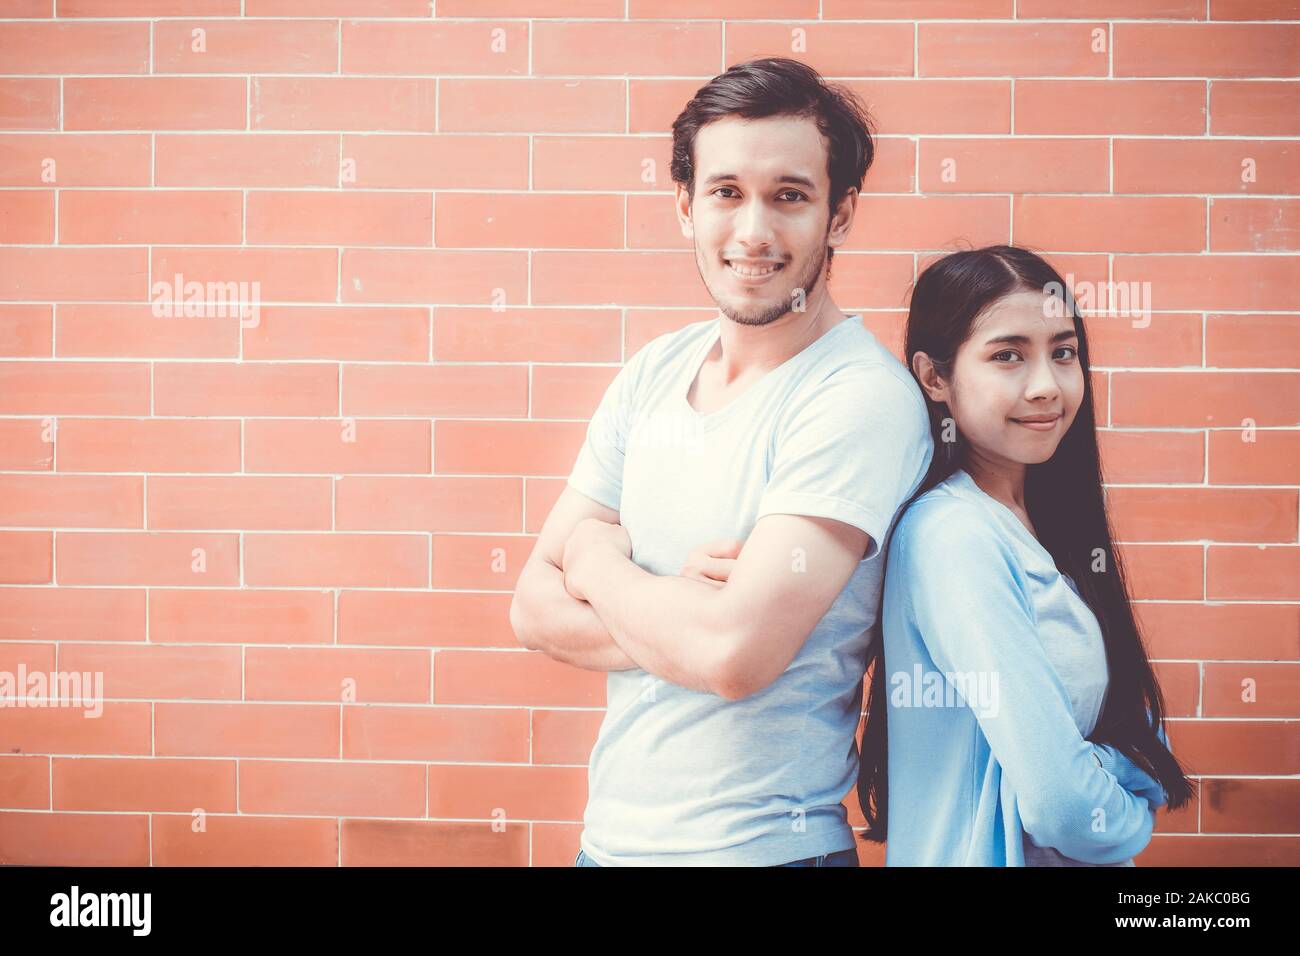 Jeune couple homme et femme asiatique bras croisés et stand attrayant sourire tout en dos à dos sur mur de brique avec fond romantique, petit ami et girl Banque D'Images